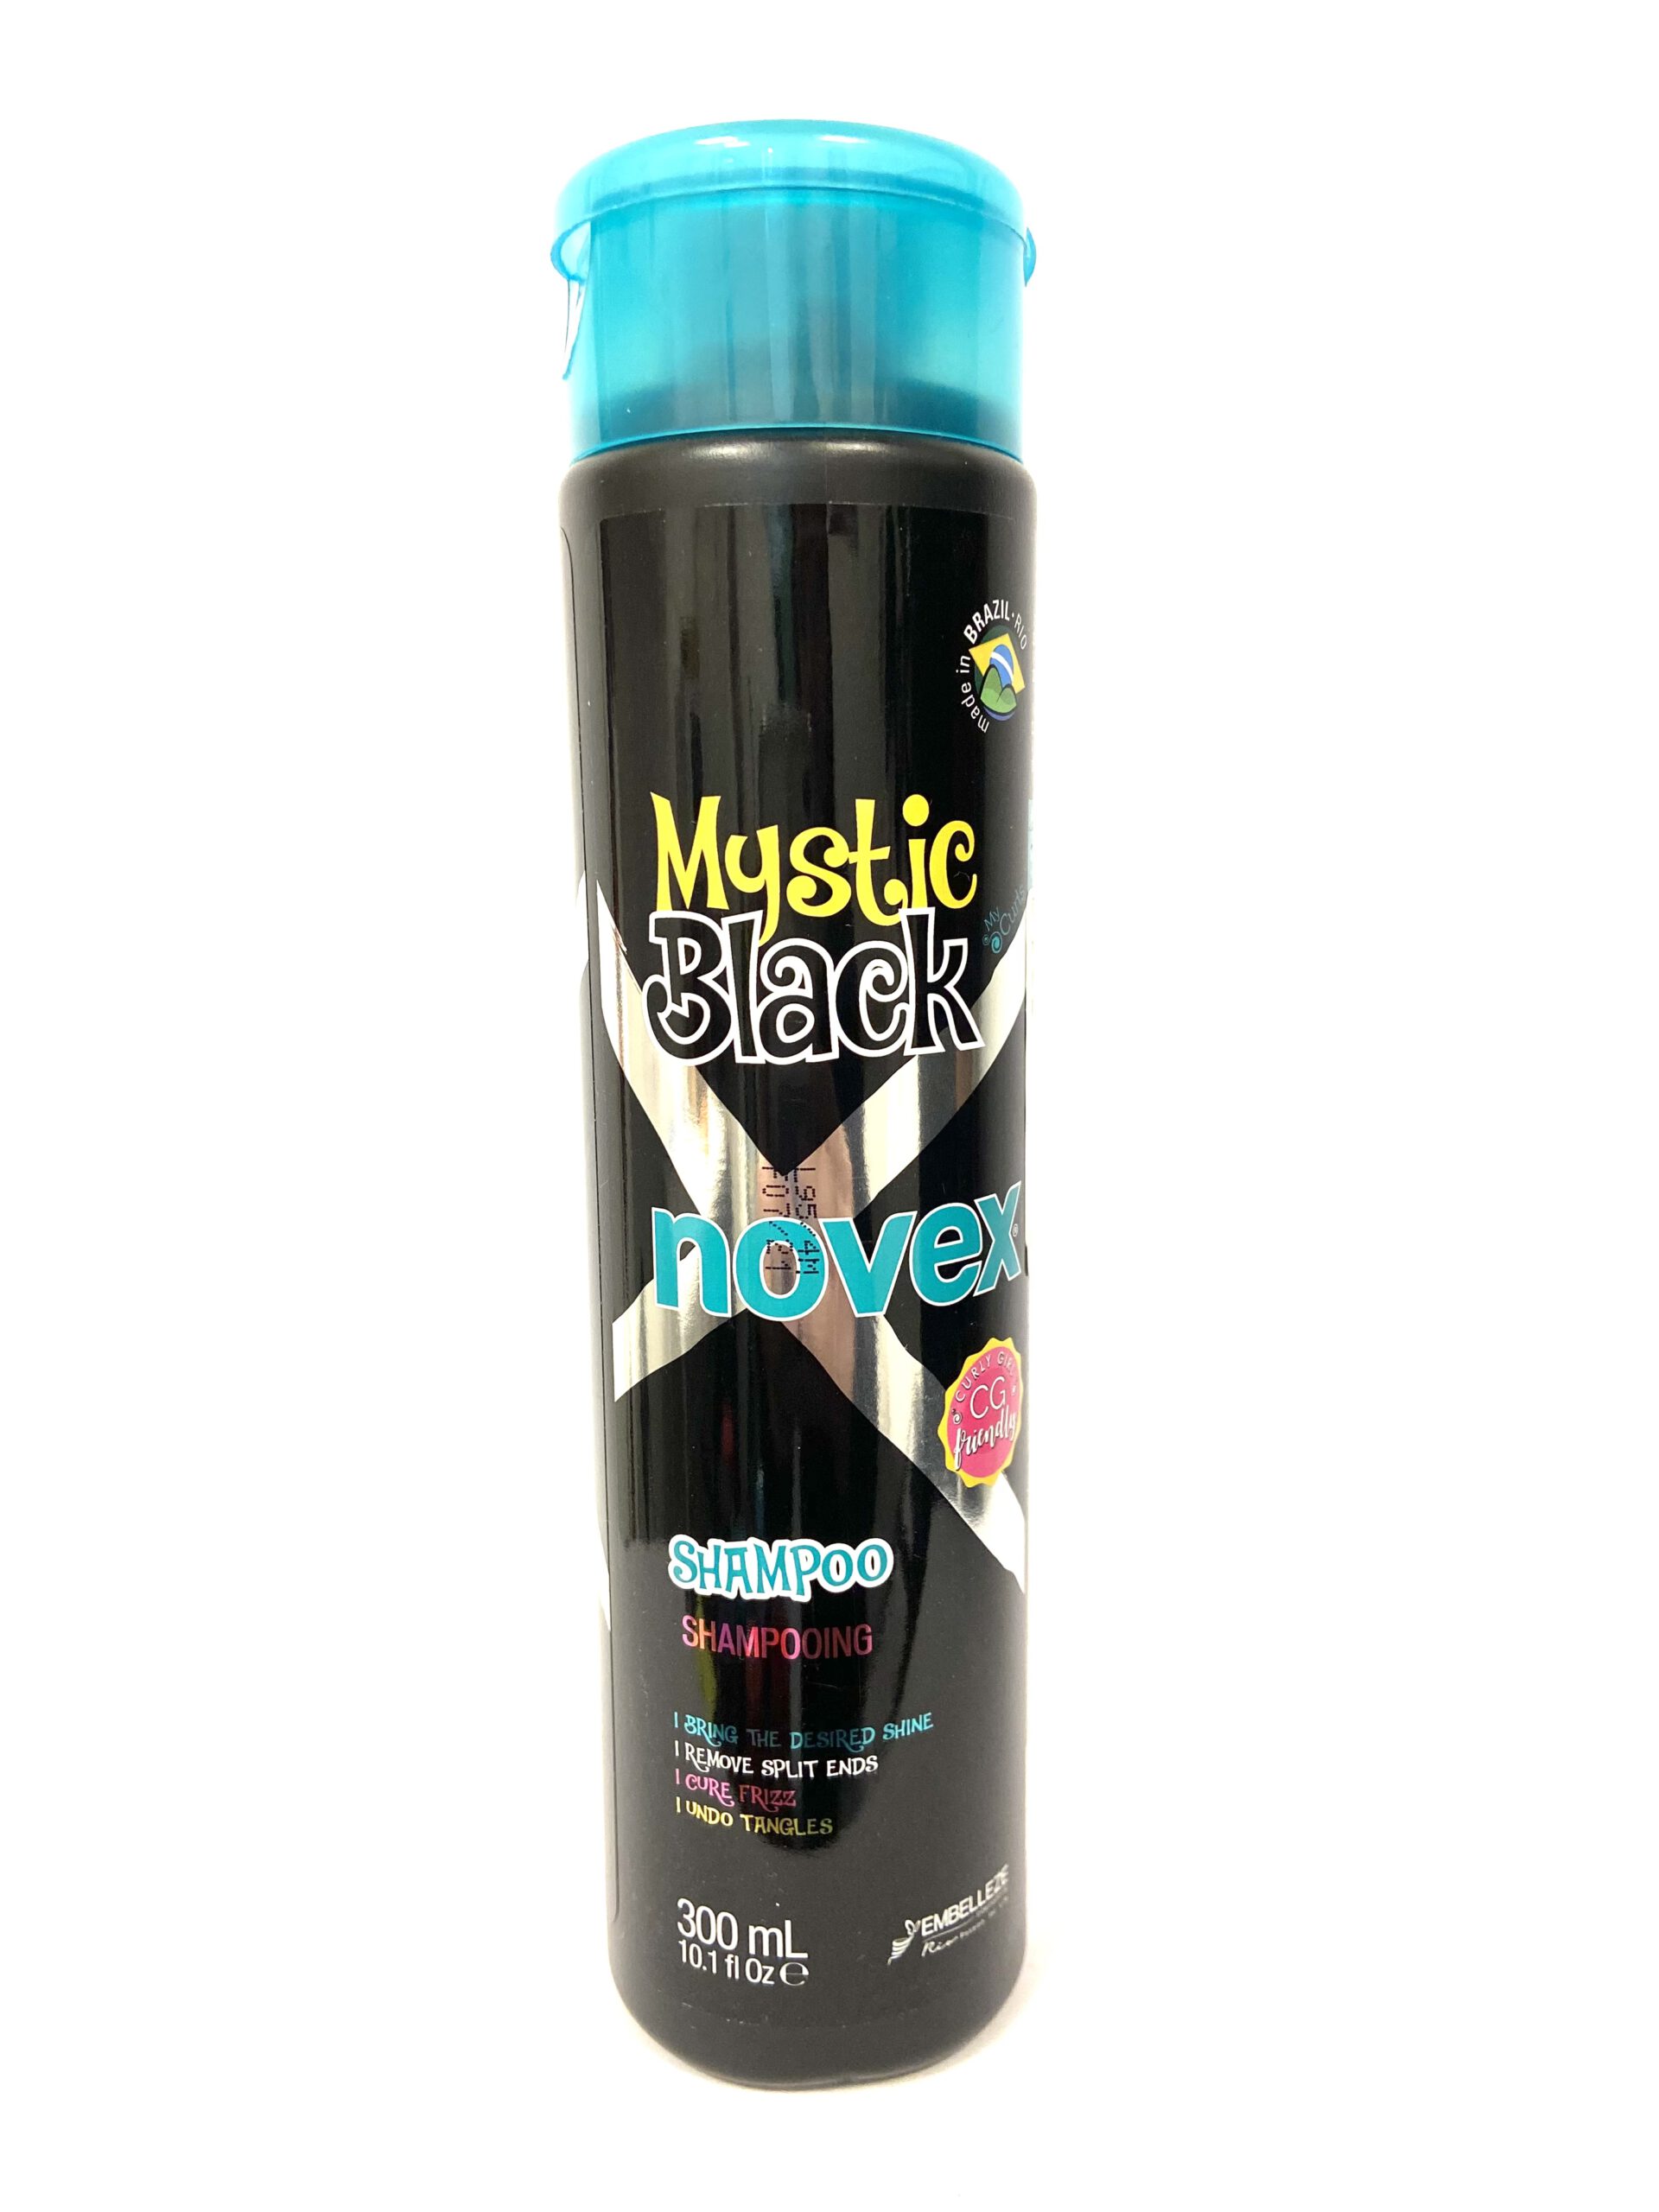 Mustic Black Novex Shampoo 300mL